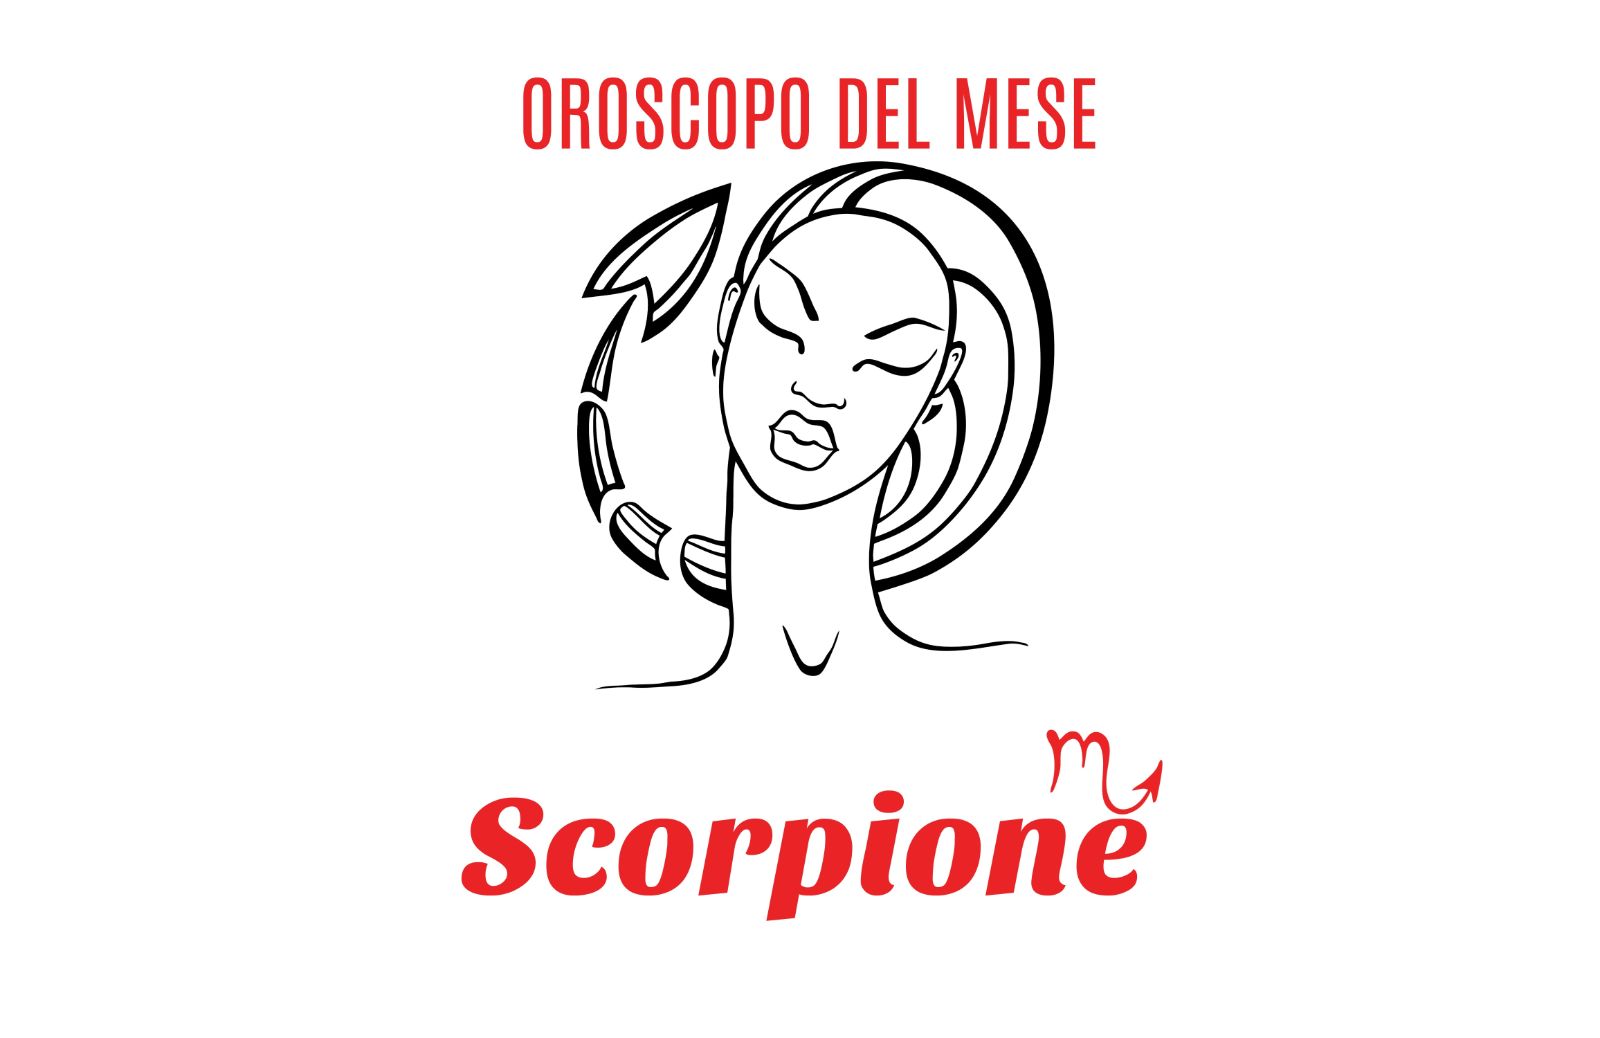 Oroscopo del mese: Scorpione - settembre 2018